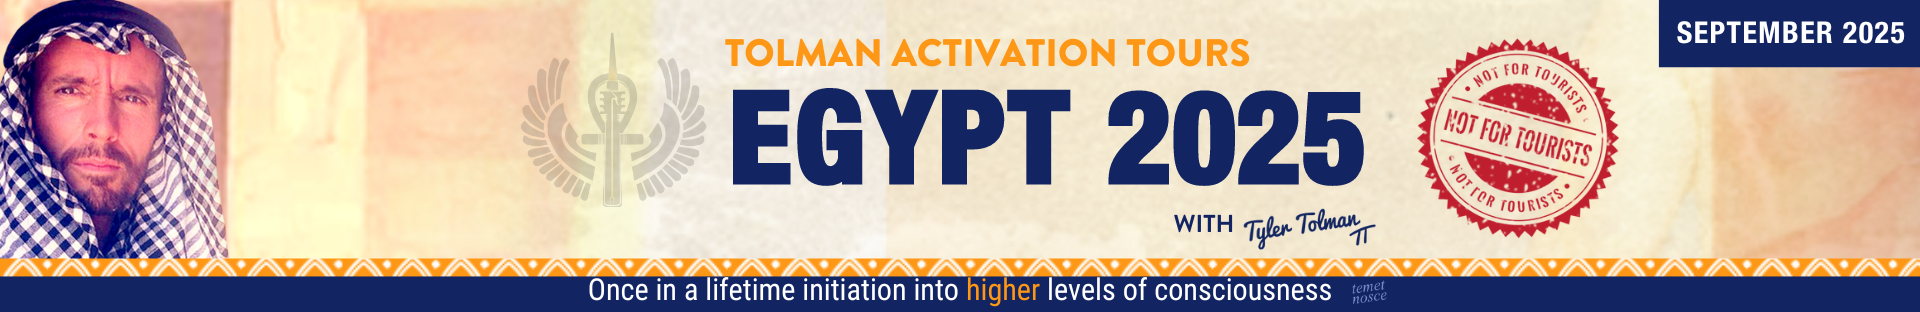 Tolman Activation Tour Egypt 2025